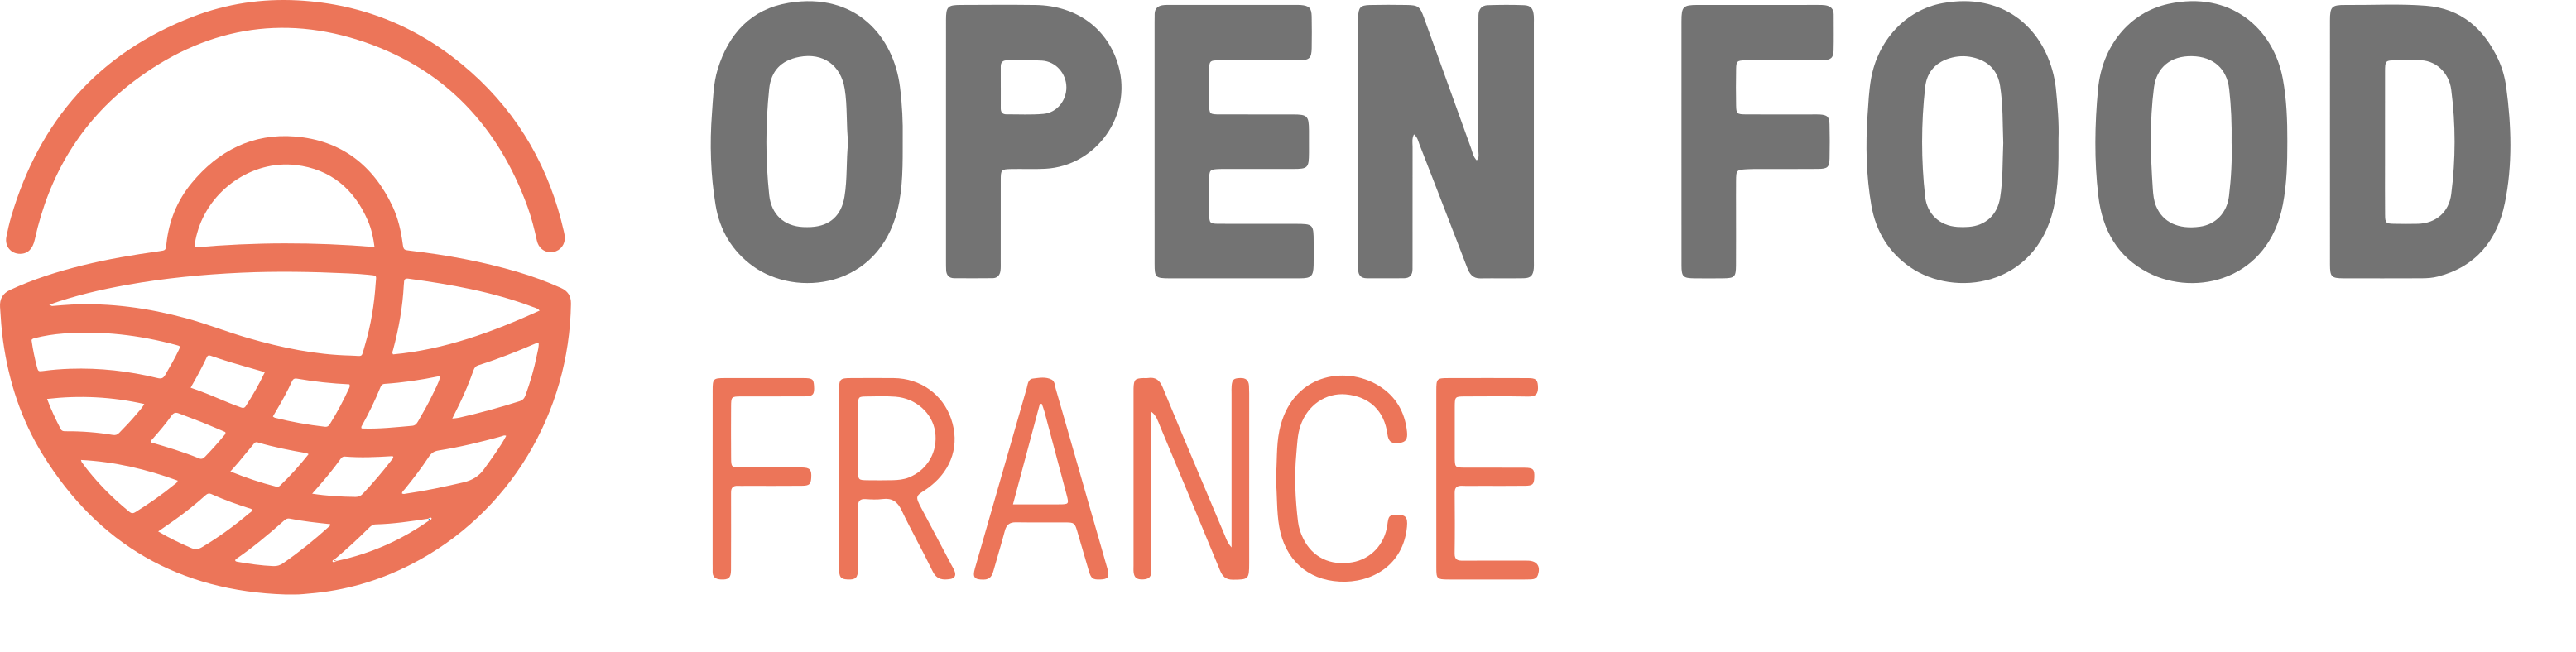 Logo Open Food France.png